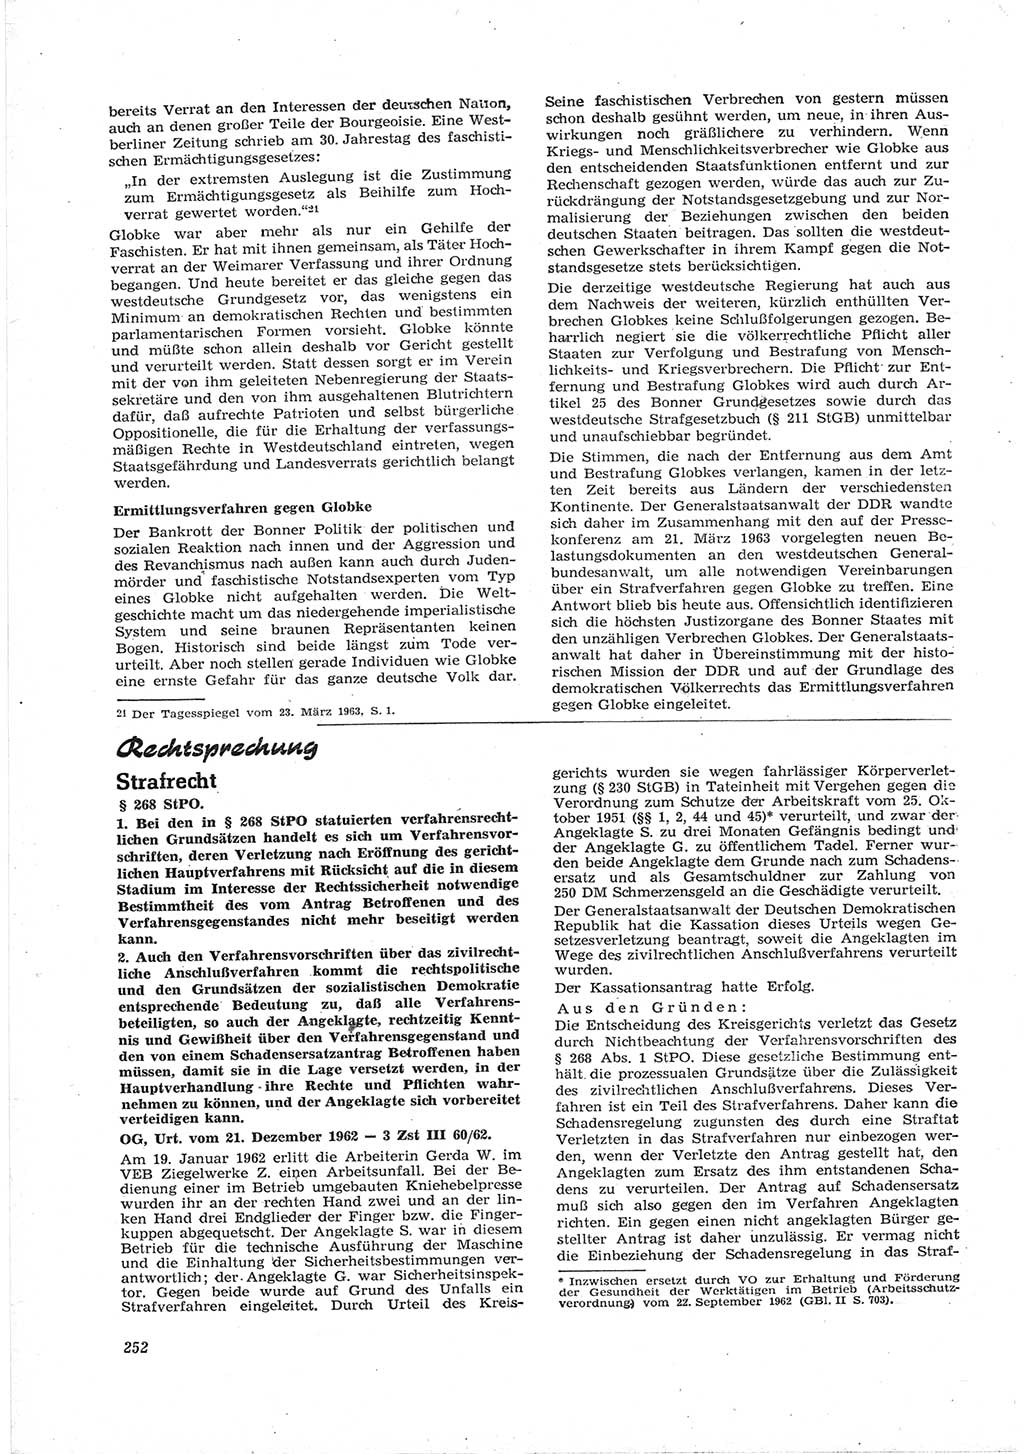 Neue Justiz (NJ), Zeitschrift für Recht und Rechtswissenschaft [Deutsche Demokratische Republik (DDR)], 17. Jahrgang 1963, Seite 252 (NJ DDR 1963, S. 252)